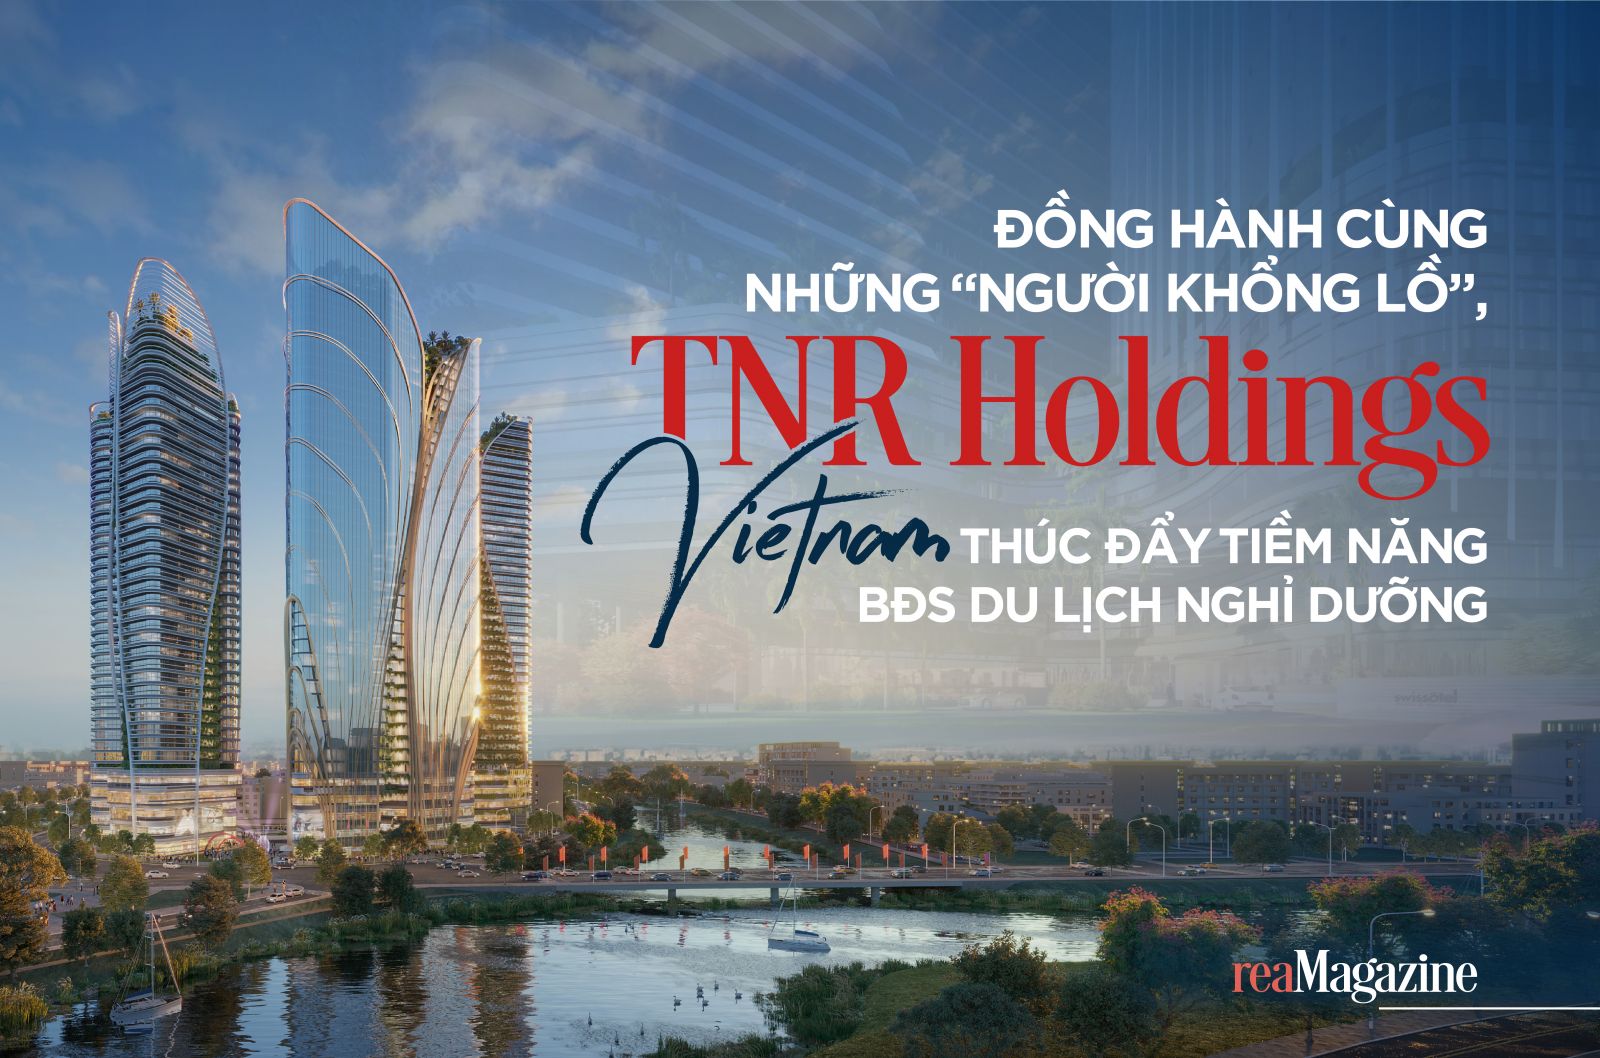 Đồng hành cùng những “người khổng lồ”, TNR Holdings Vietnam thúc đẩy tiềm năng BĐS du lịch nghỉ dưỡng